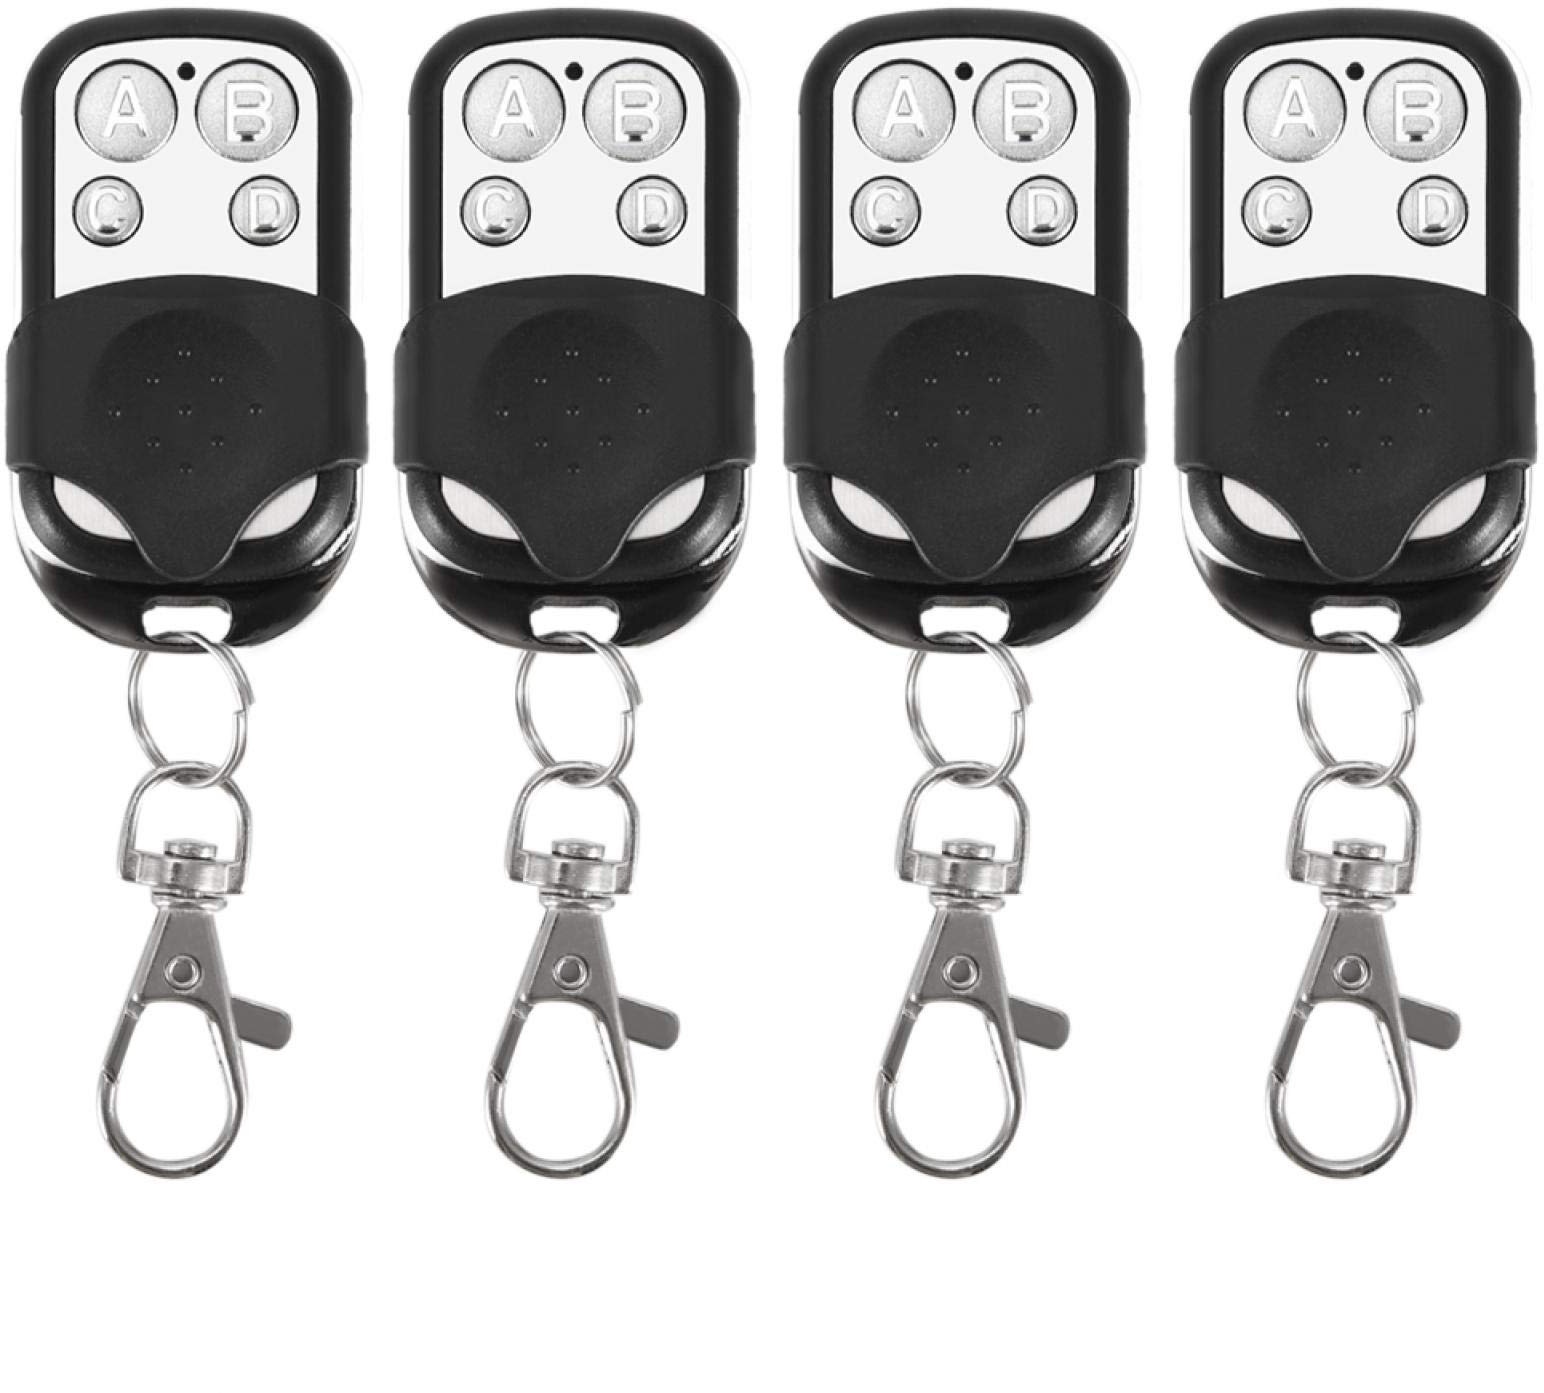 Garagentor Fernbedienung Universal Fernbedienung Schlüsselanhänger, 4 Stück, Universal-Fernbedienung, Funk-Fernbedienung, Schlüsselanhänger für Auto, Garagentor, Tor, Schlüsselanhänger